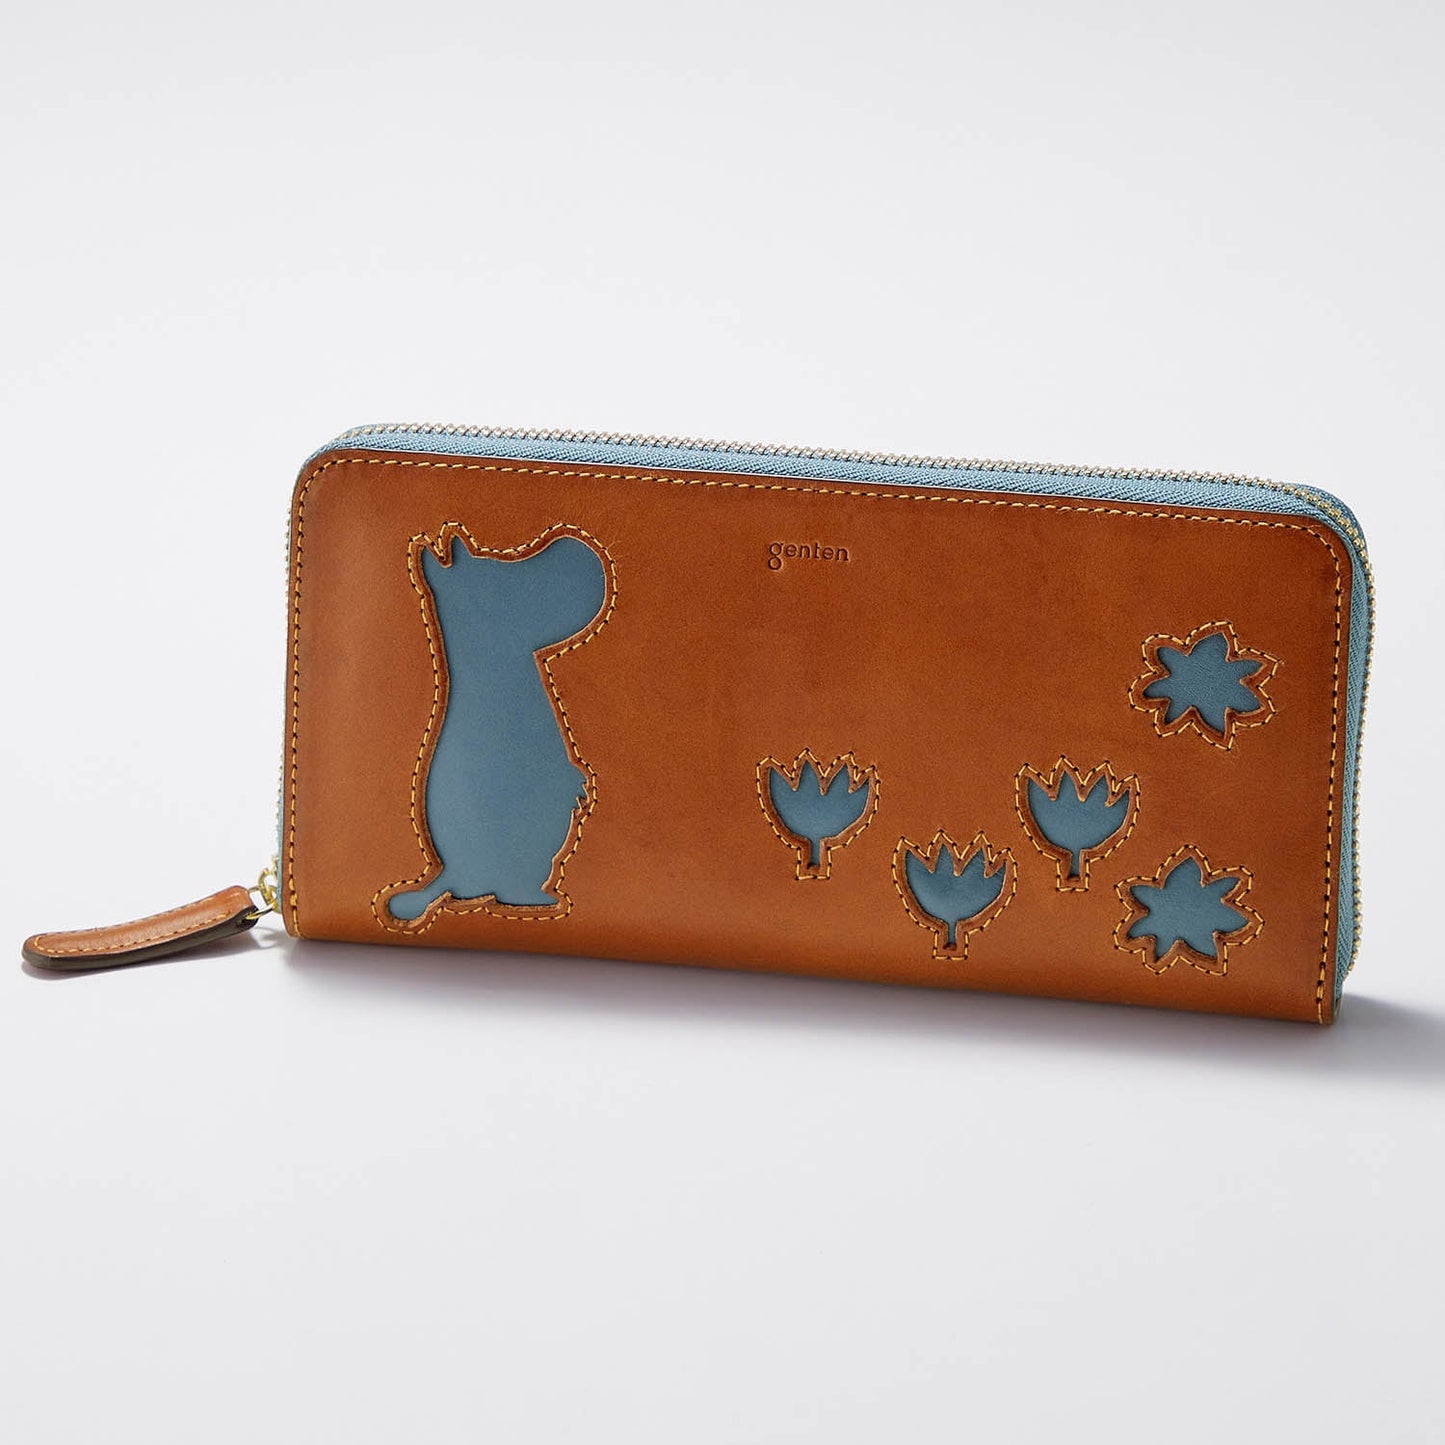  Moomin Genten leather long wallet 